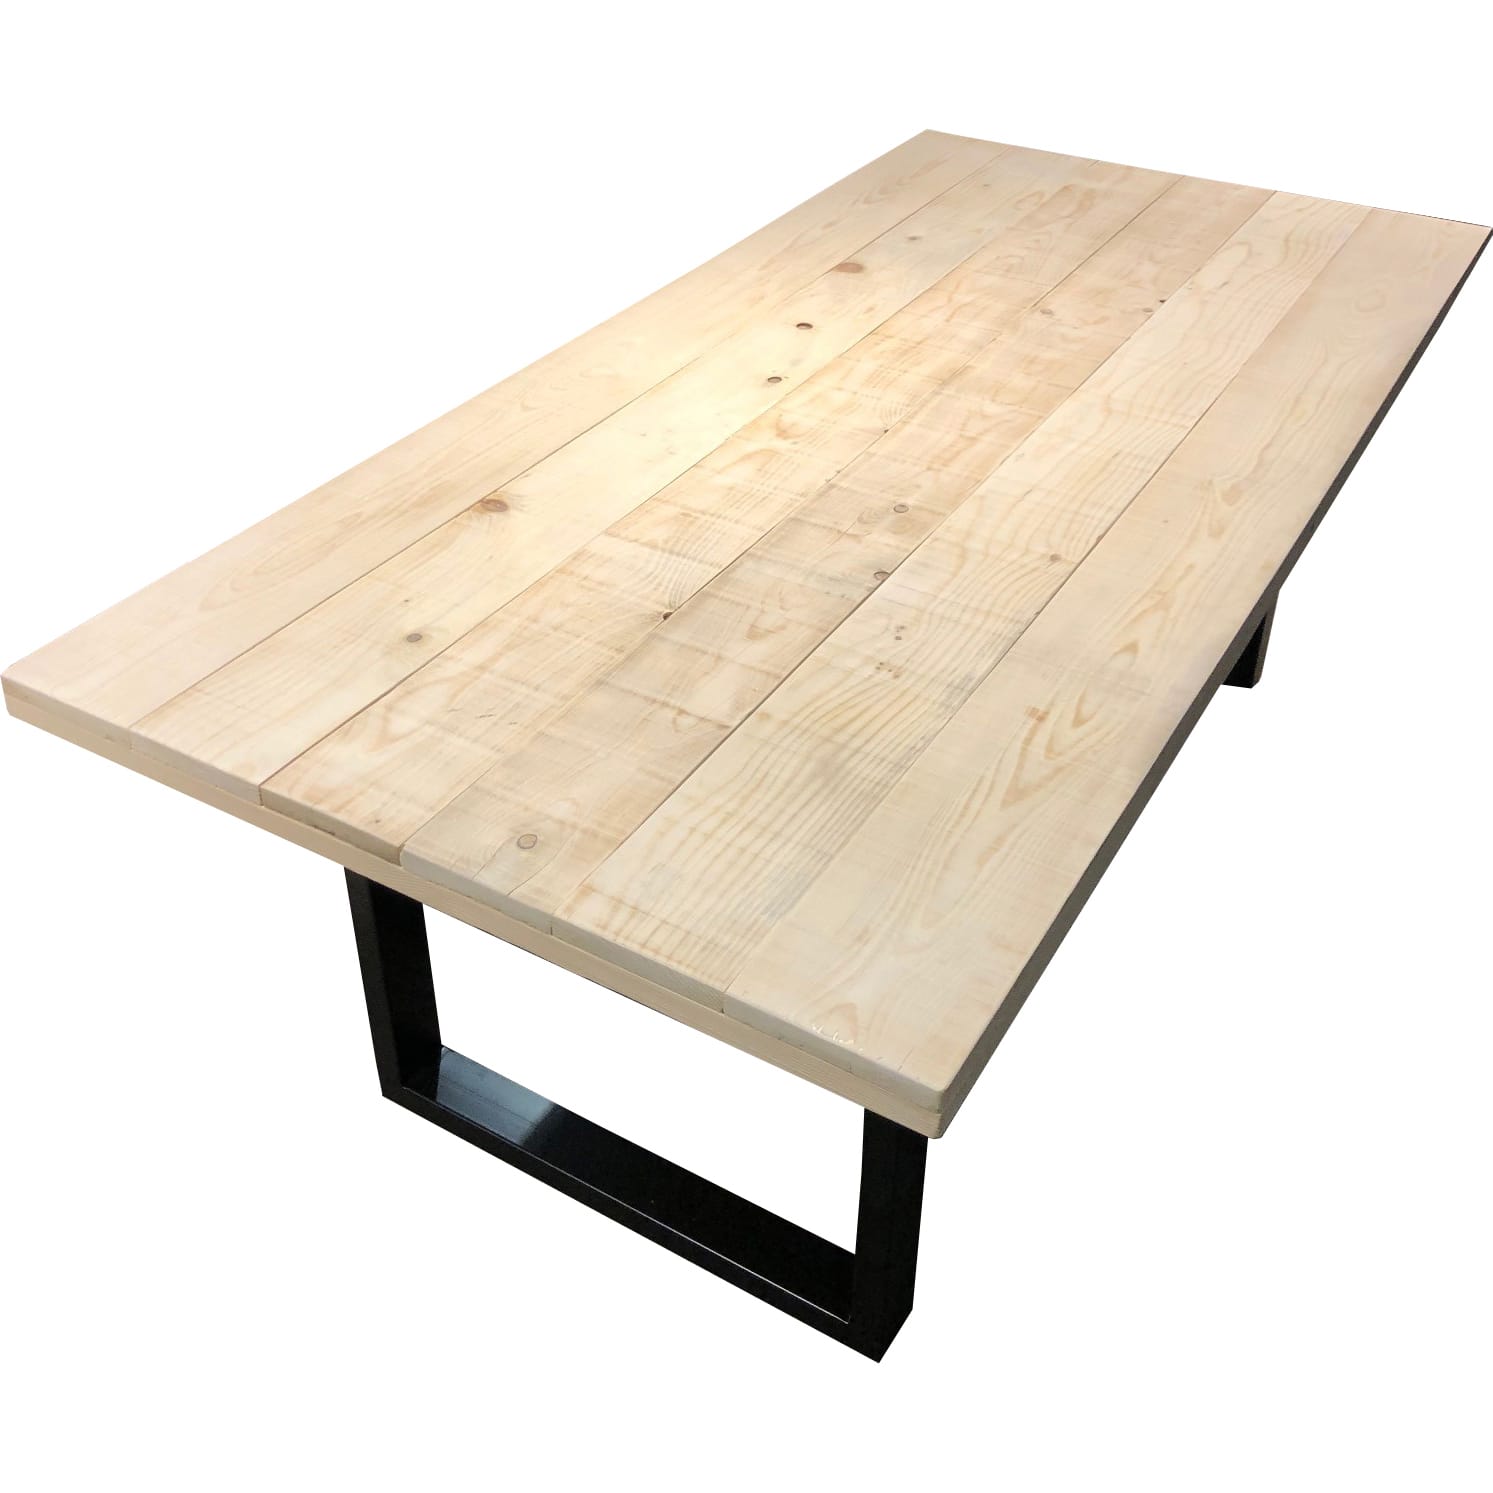 Tisch Mango natur antikschwarz 200x100 | Designtische | Esstische | Tische  | Möbel | mutoni möbel